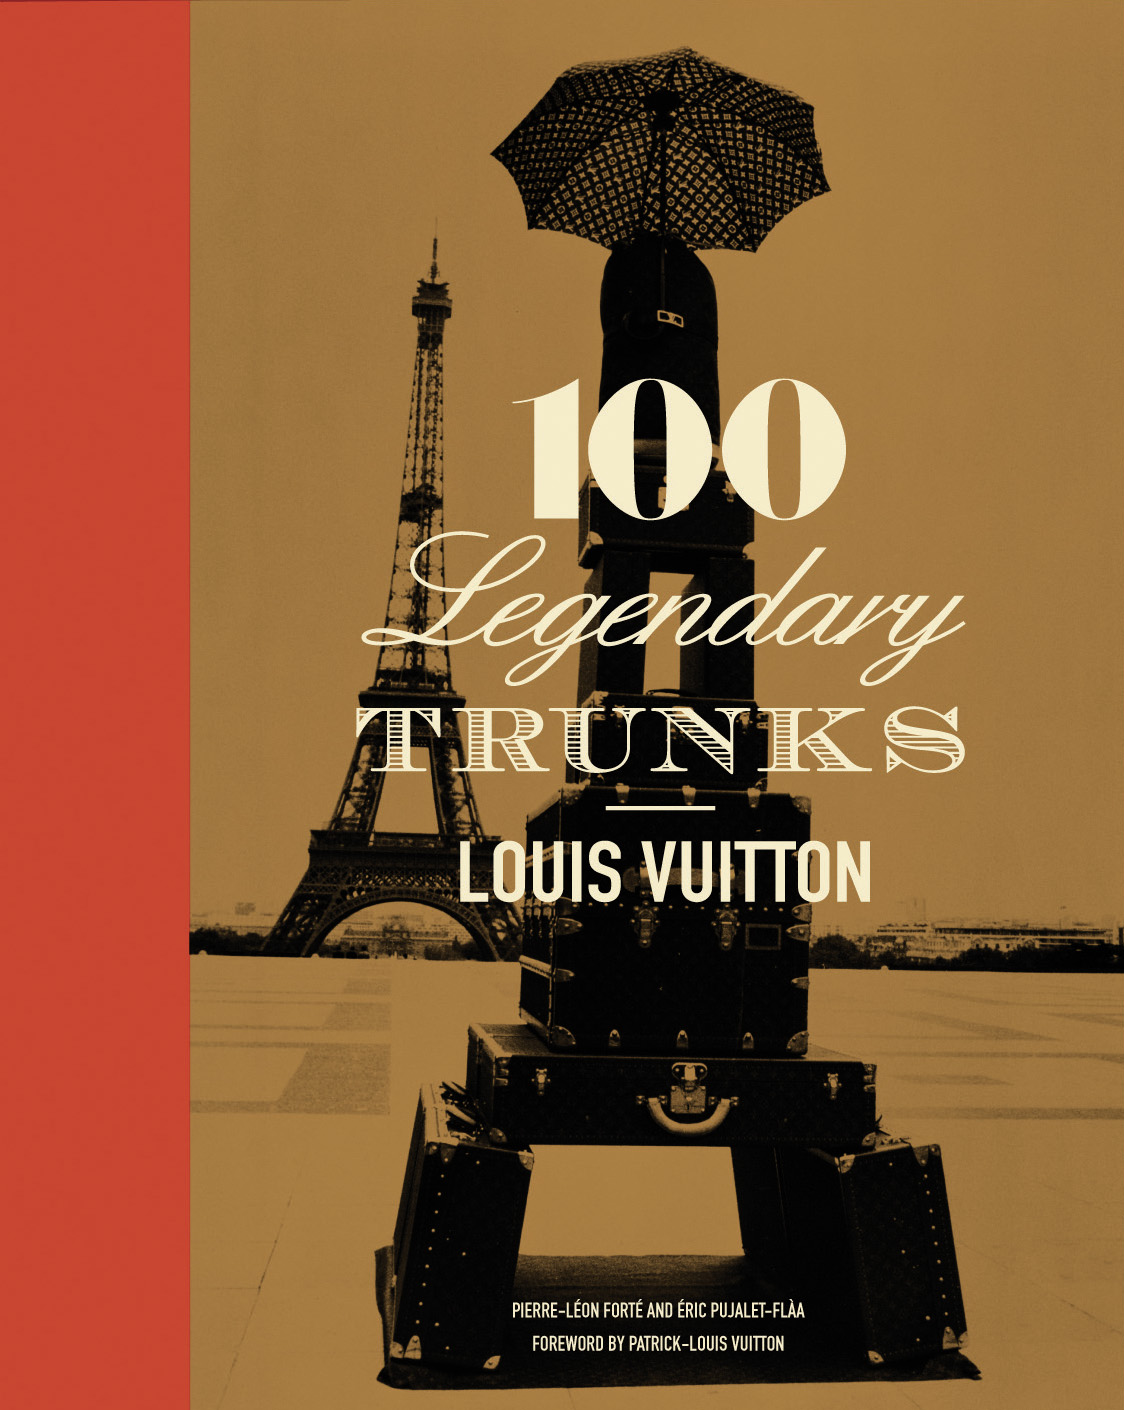 ALBERTINE | Louis Vuitton: 100 Legendary Trunks